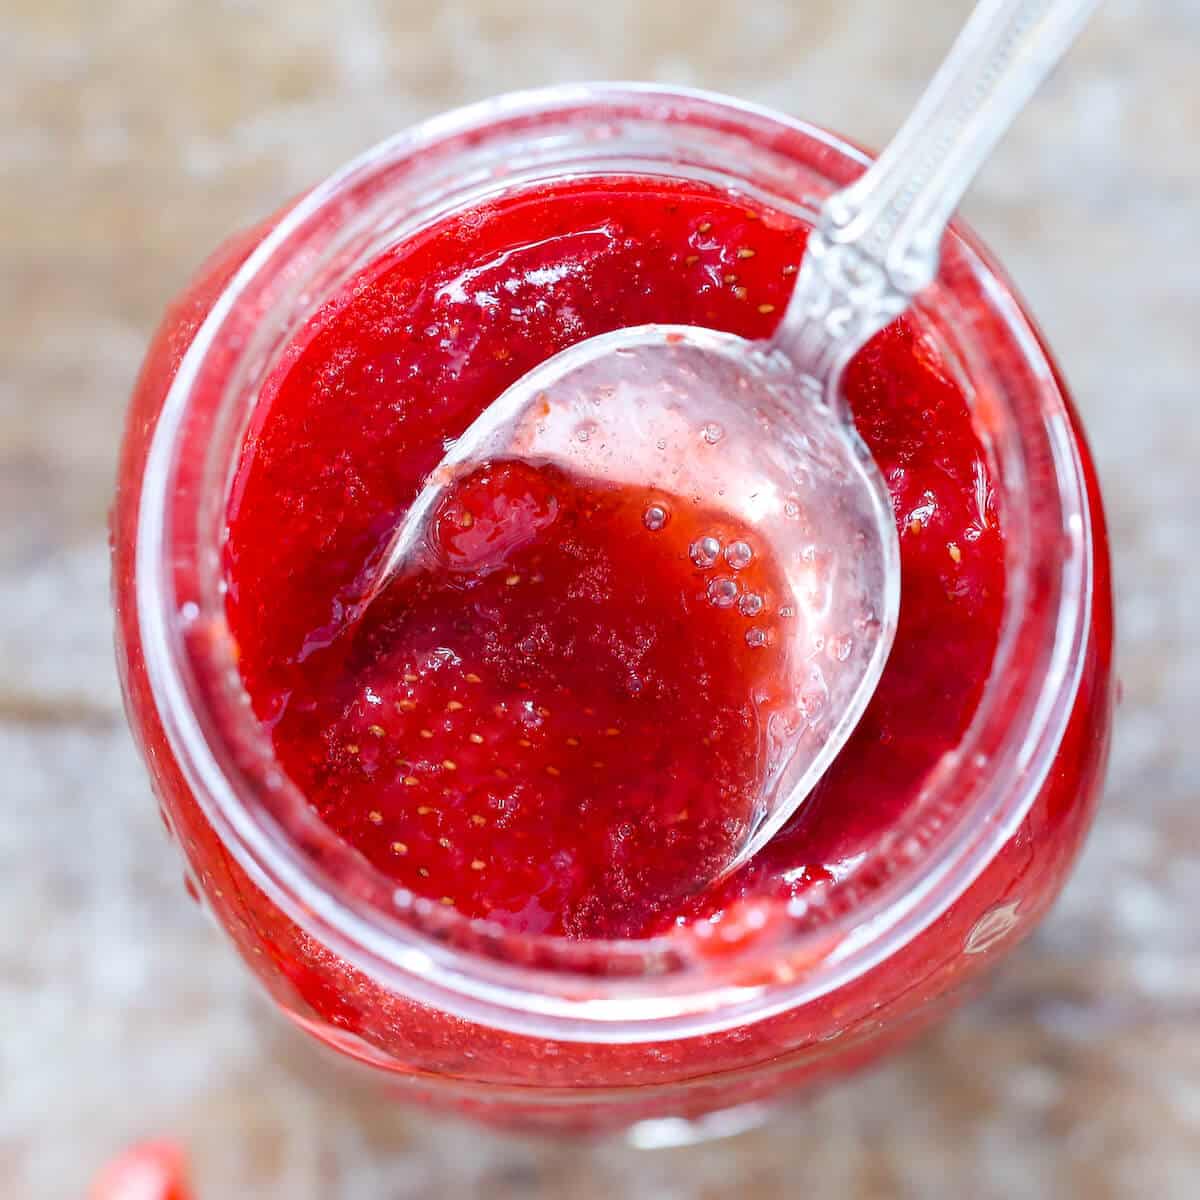 https://cheflindseyfarr.com/wp-content/uploads/2021/09/quick-strawberry-jam-featured.jpg